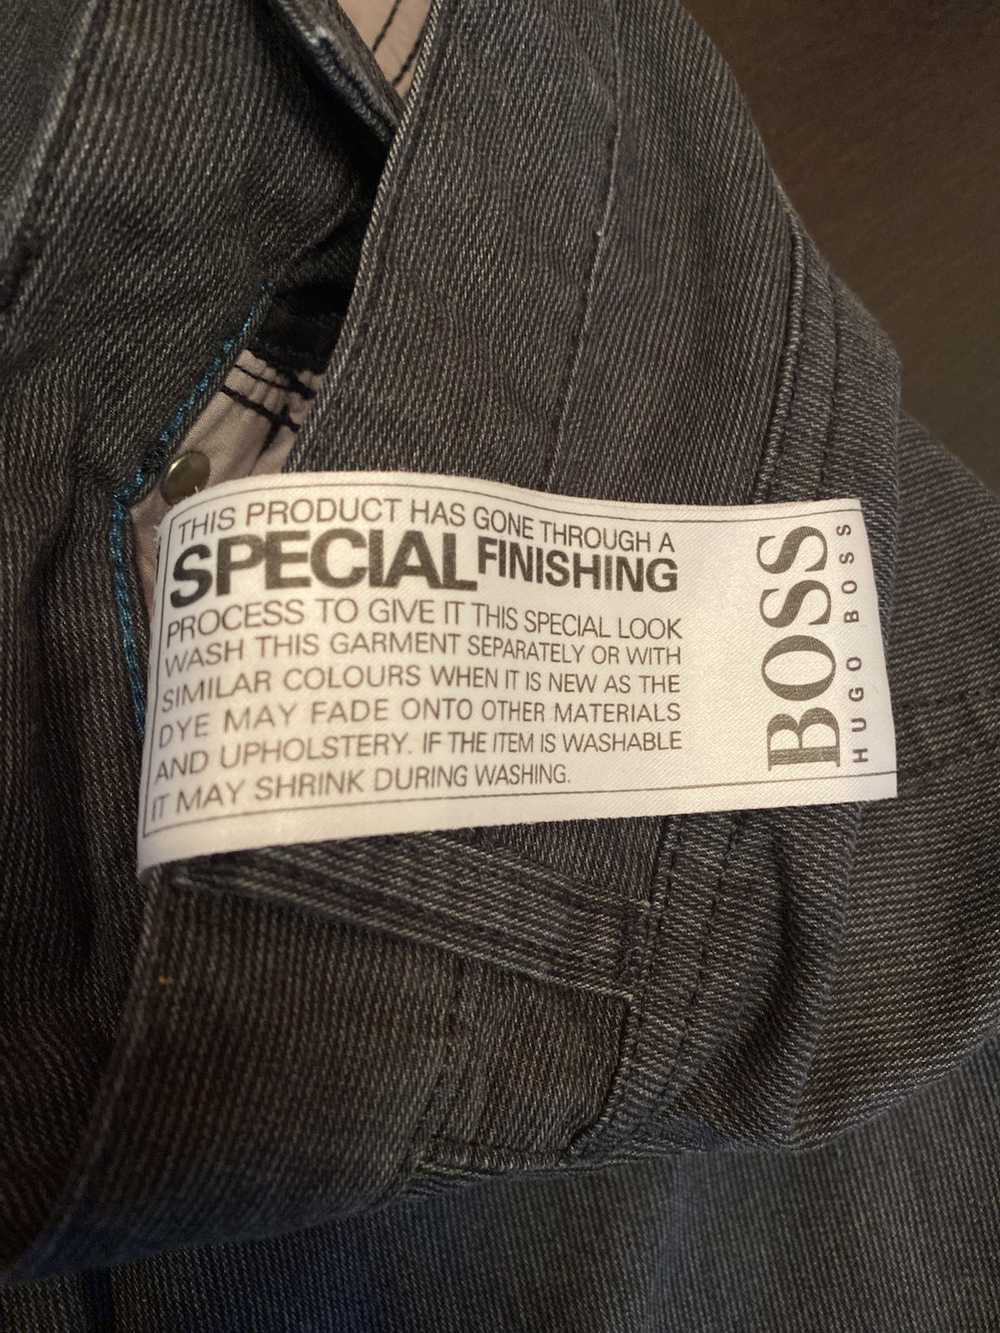 Hugo Boss Hugo Boss jeans - image 5